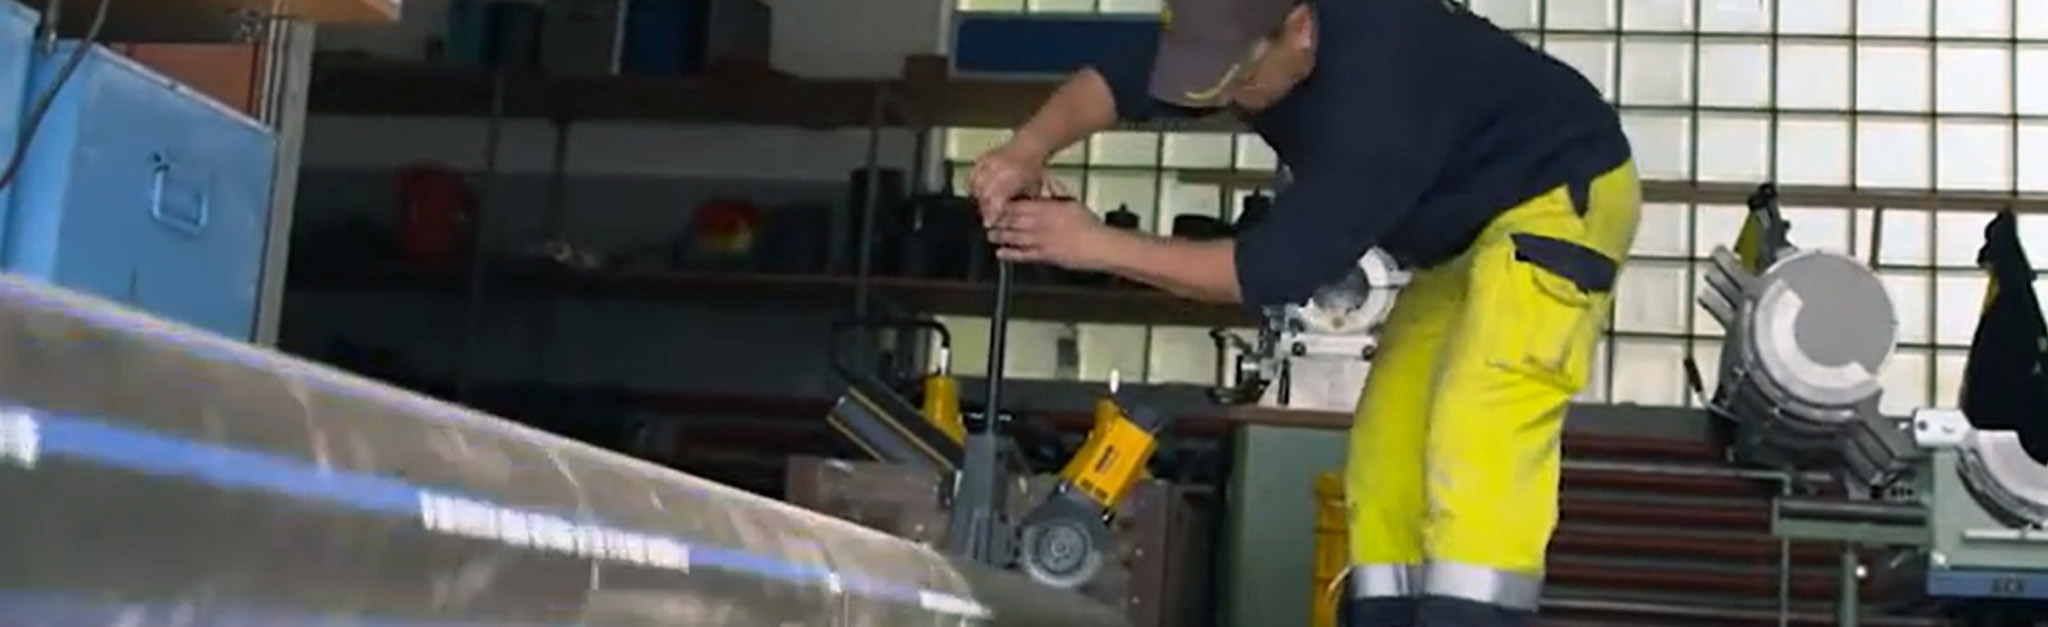 Un monteur de tuyauterie travaille sur une machine dans une usine avec du texte.